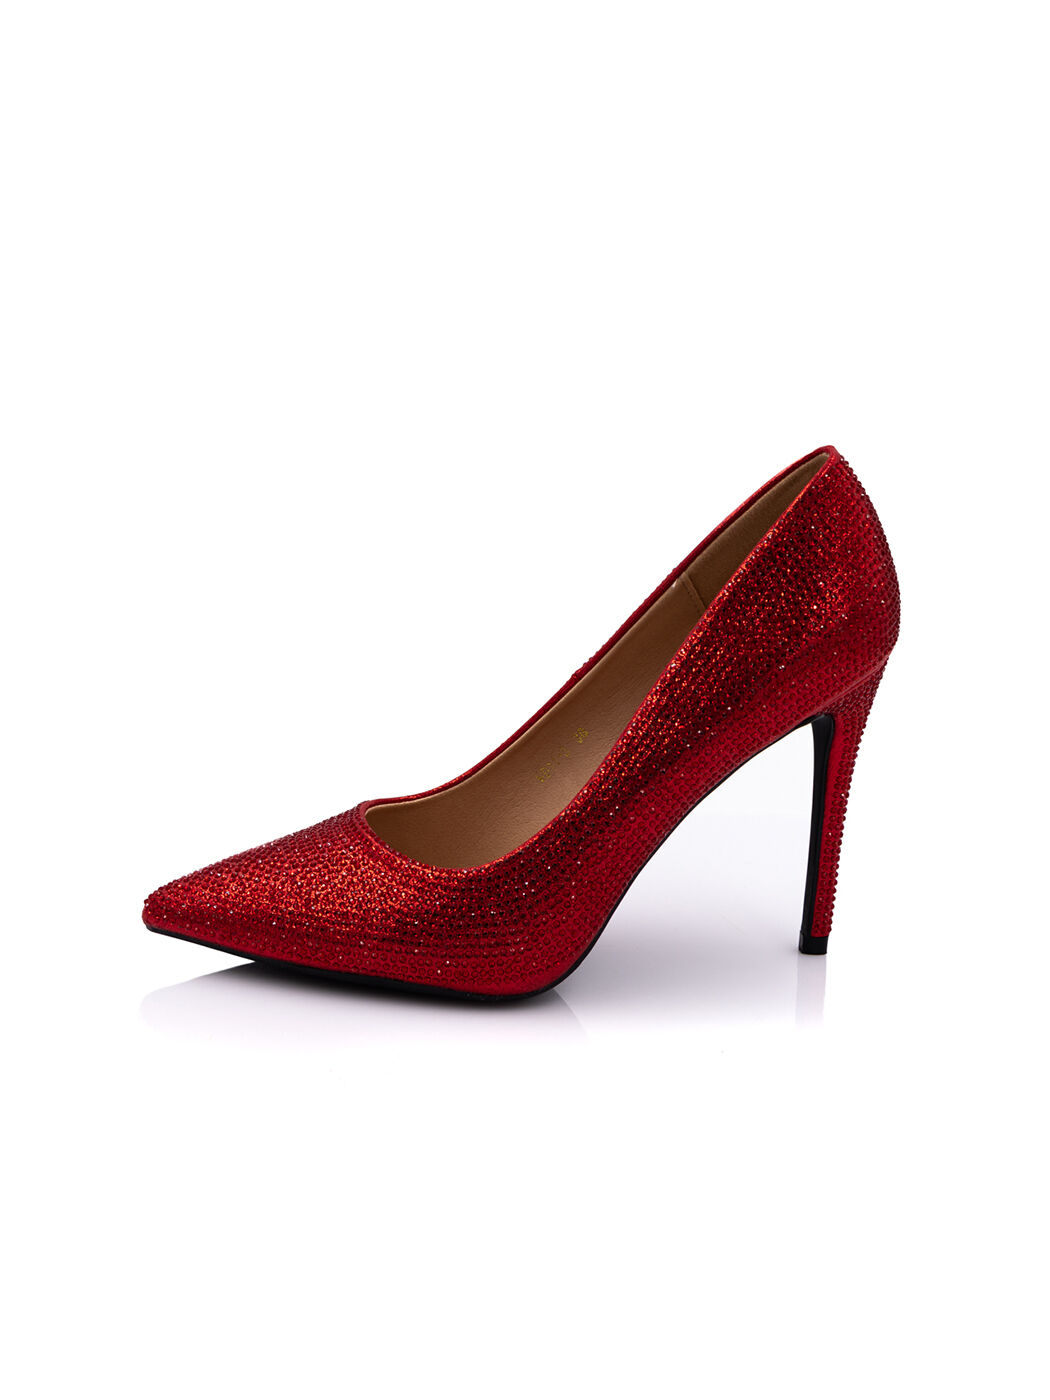 Туфли женские красные экокожа каблук шпилька демисезон 3M